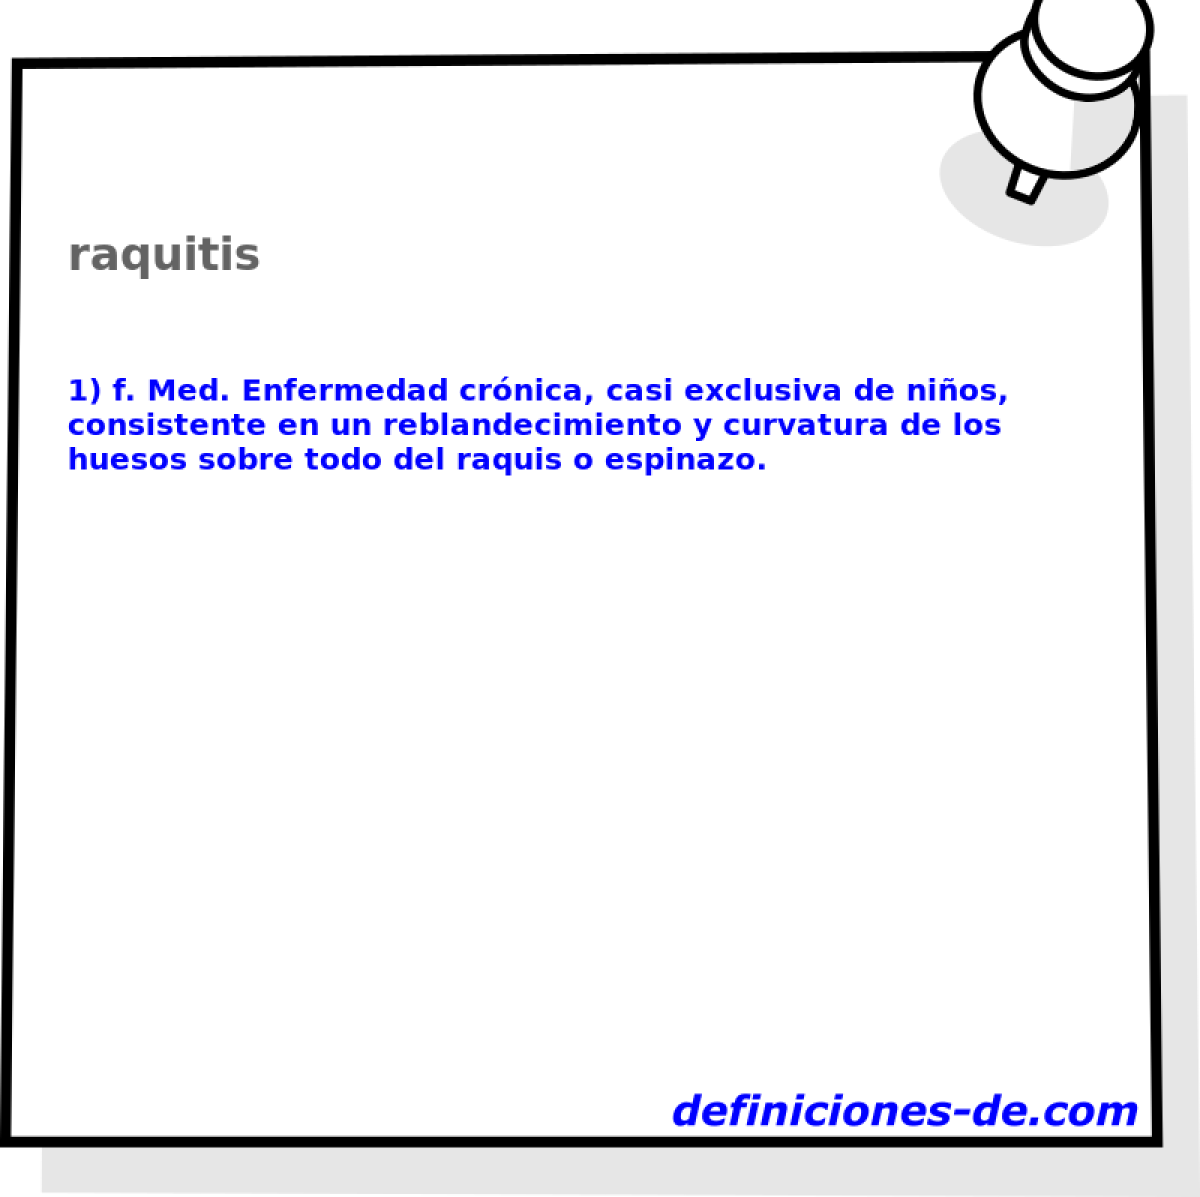 raquitis 